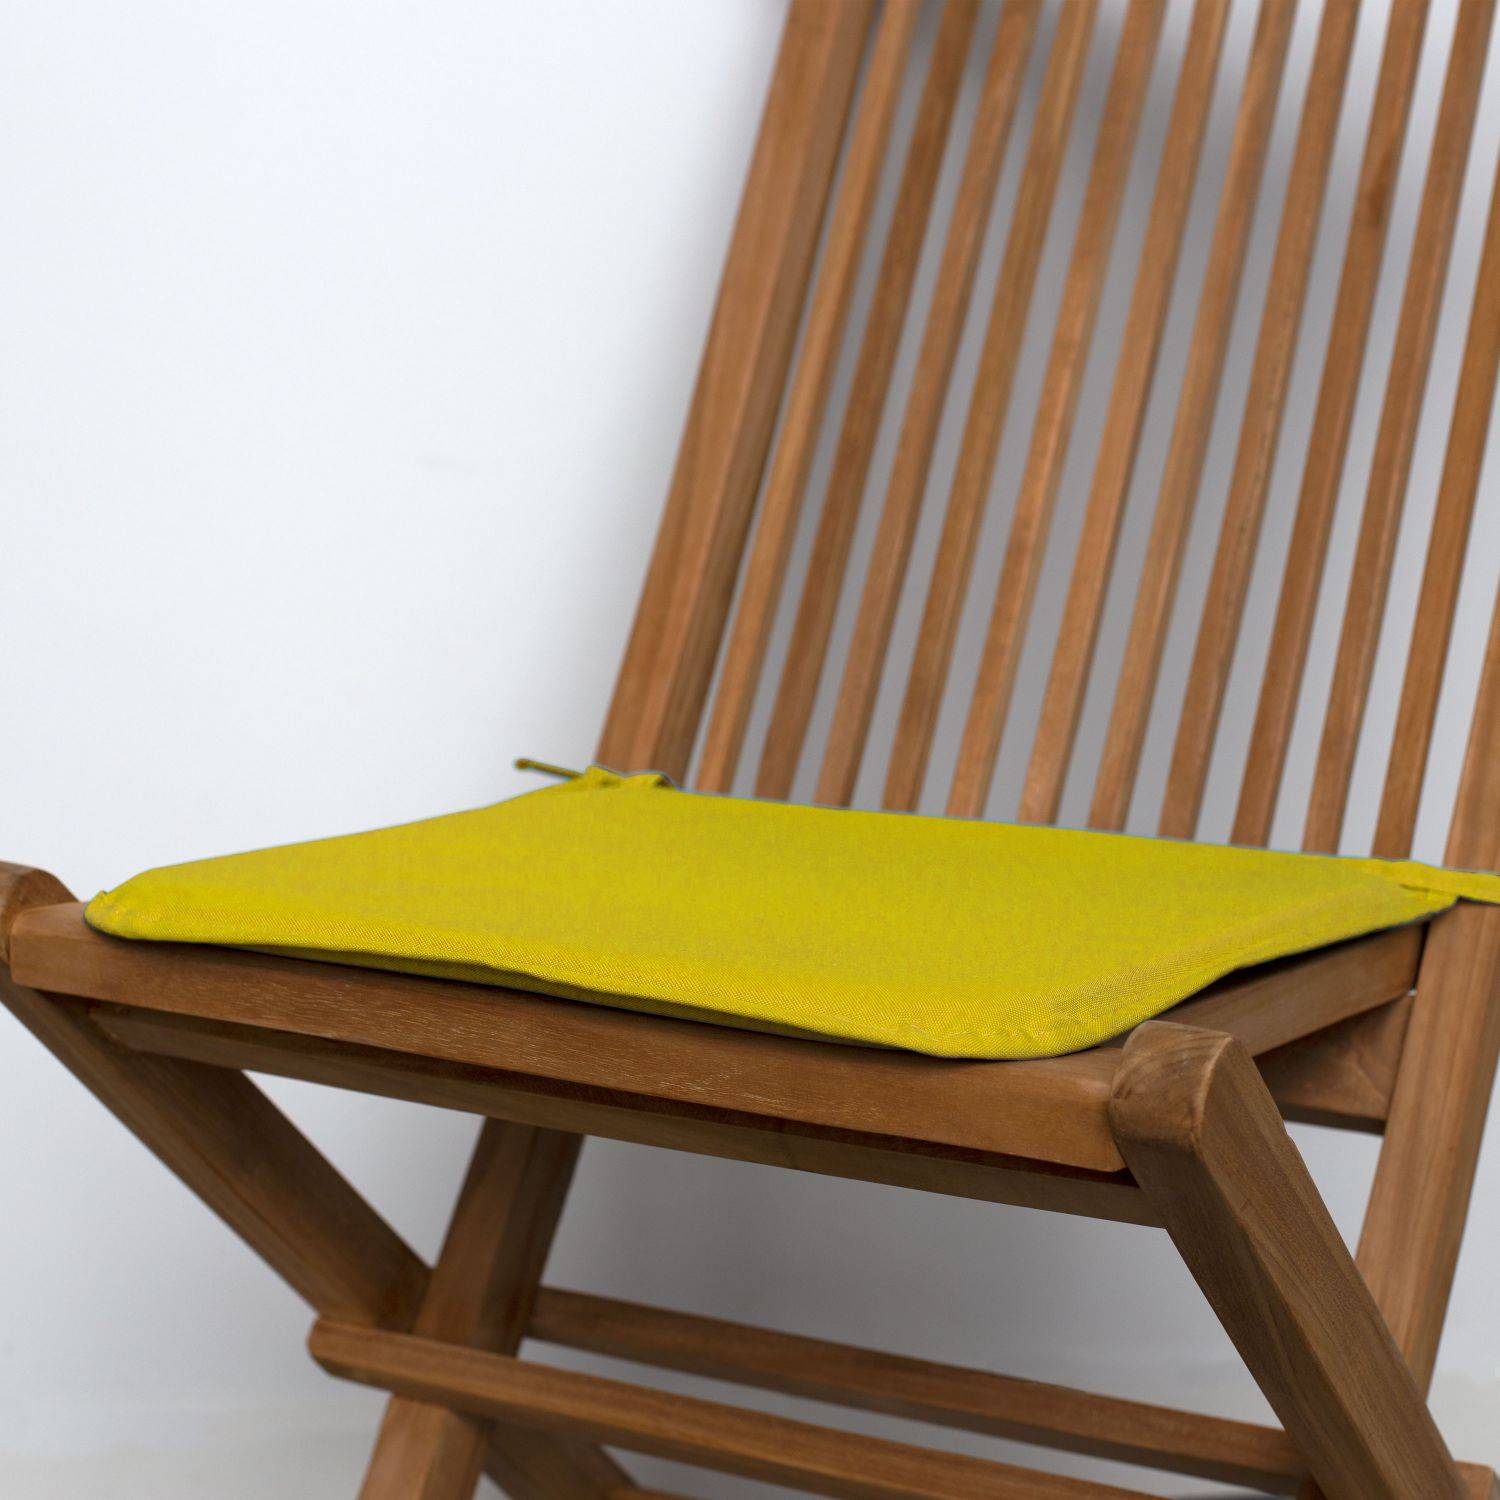 Lot de 4 galettes de chaise – 38 x 38 cm – Sunny (jaune), assise avec fixation à nœuds, bords gansés Photo2